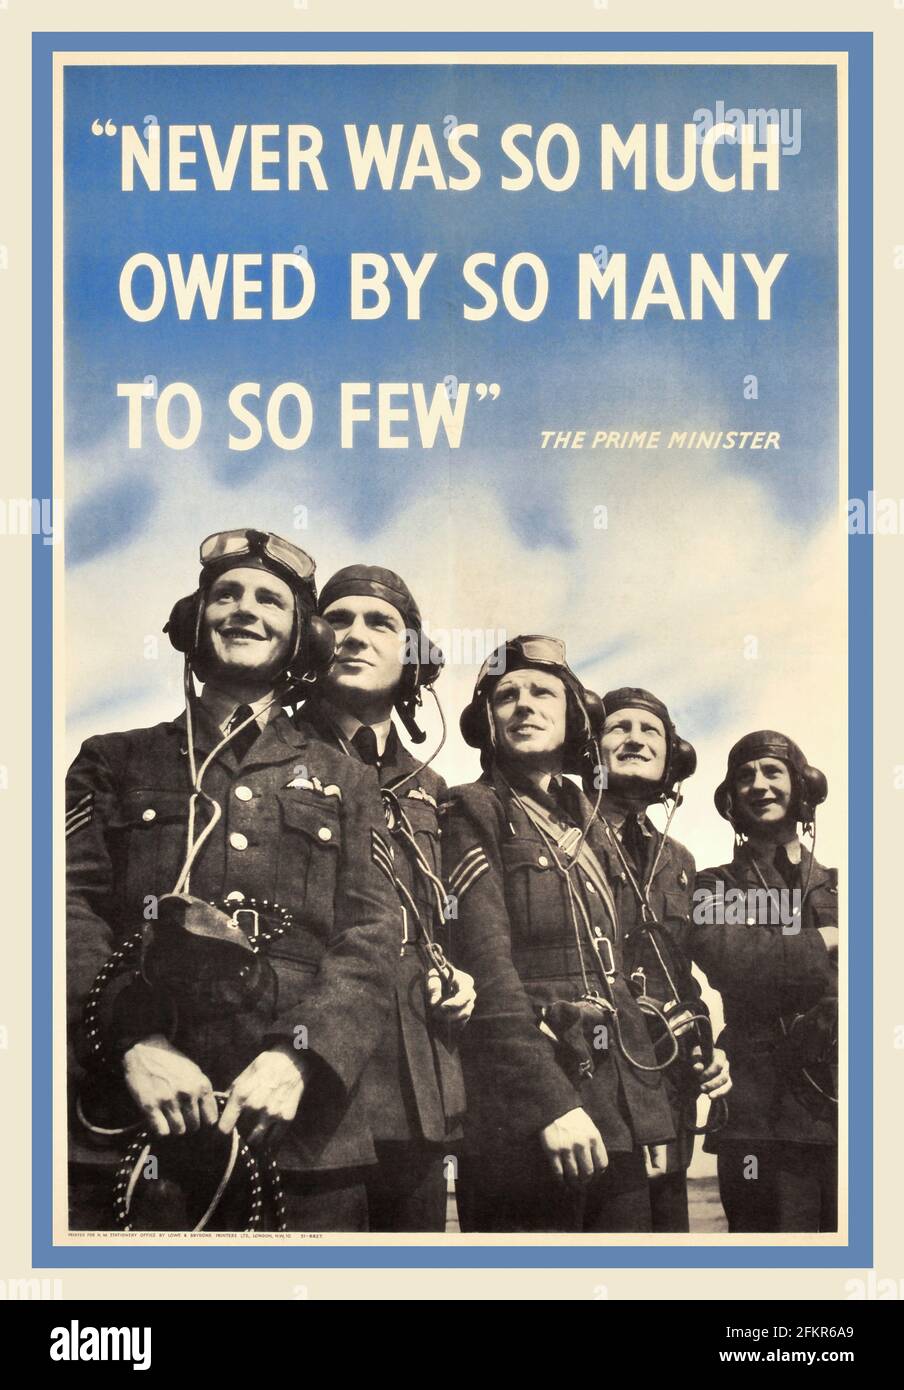 Battle of Britain affiche vintage RAF 1940's British Vintage WW2 RAF Royal Air Force affiche de propagande - avec la célèbre citation du Premier ministre Winston Churchill. 'JAMAIS AUTANT DÛ PAR TANT DE GENS À SI PEU' Banque D'Images